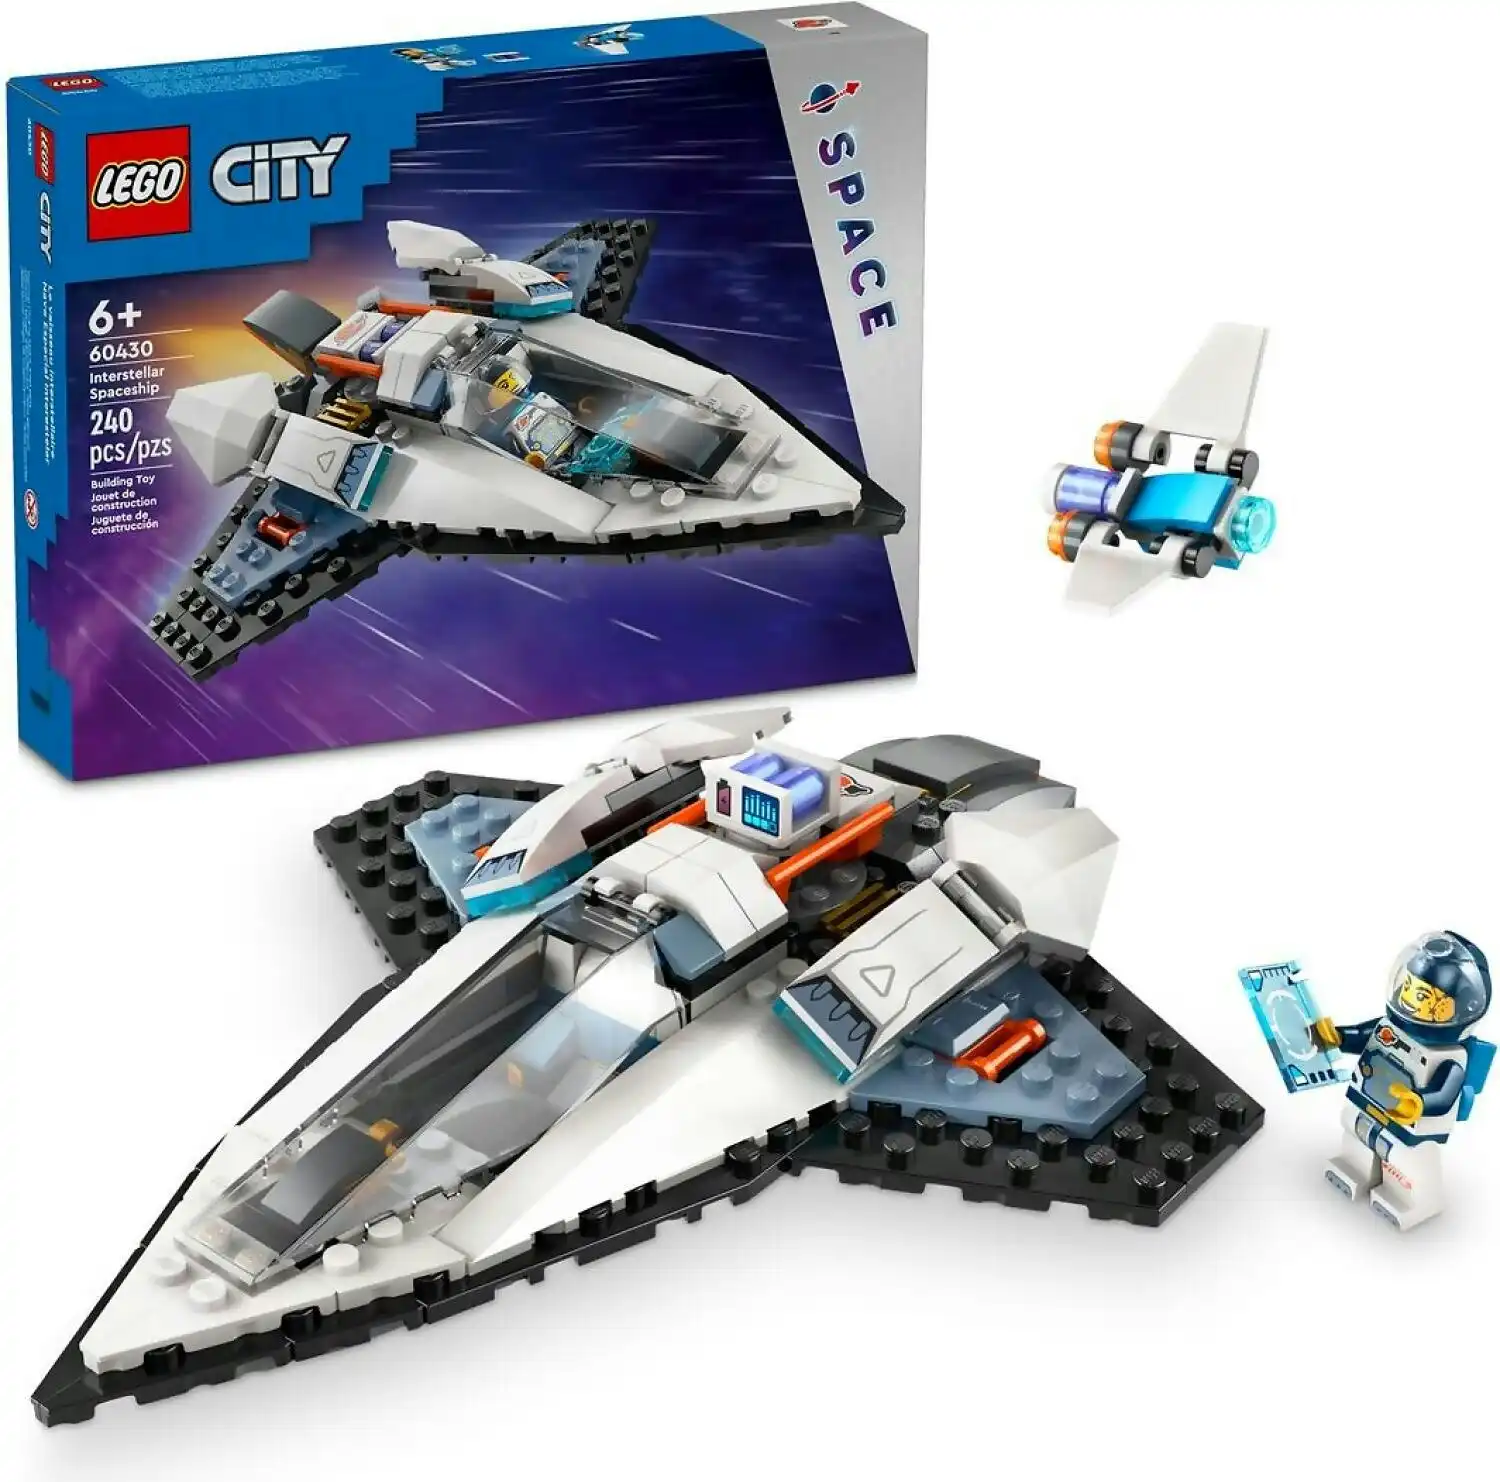 LEGO 60430 Interstellar Spaceship - City